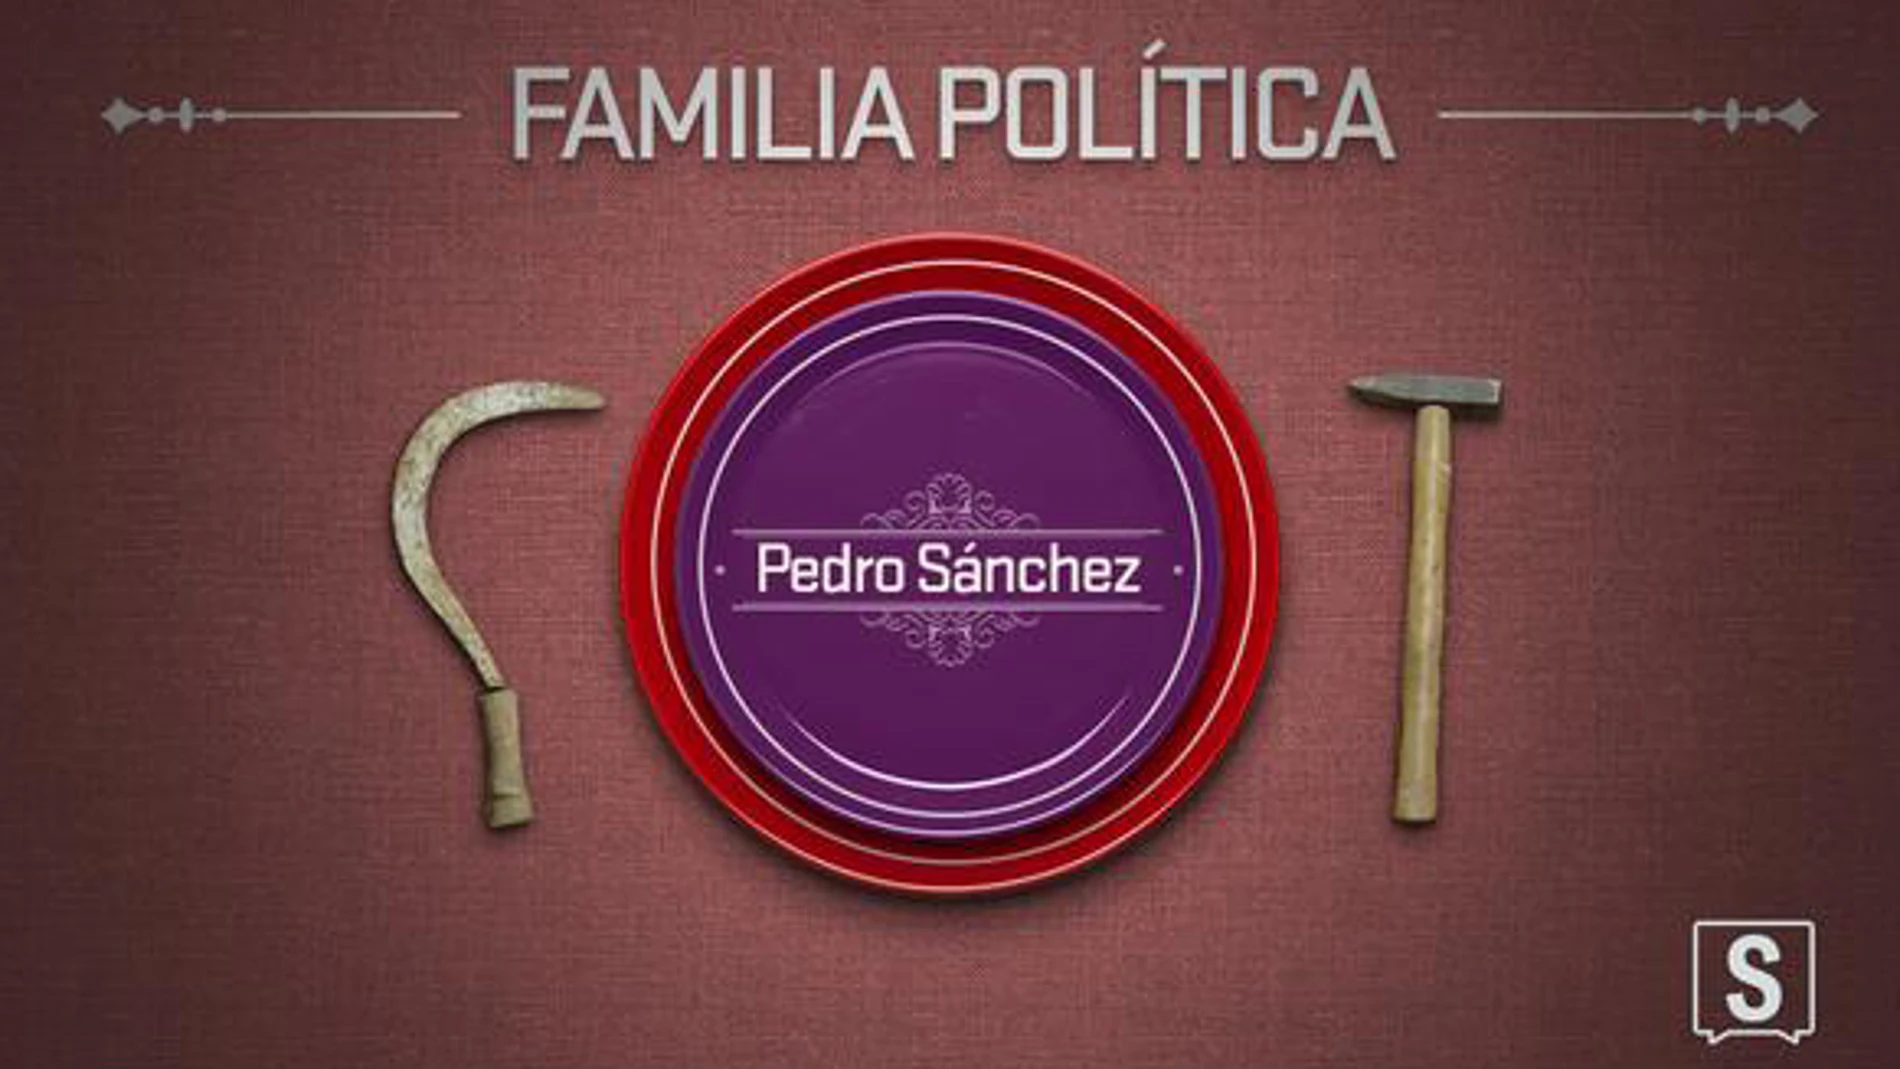 Pedro Sánchez, en 'Familia política'